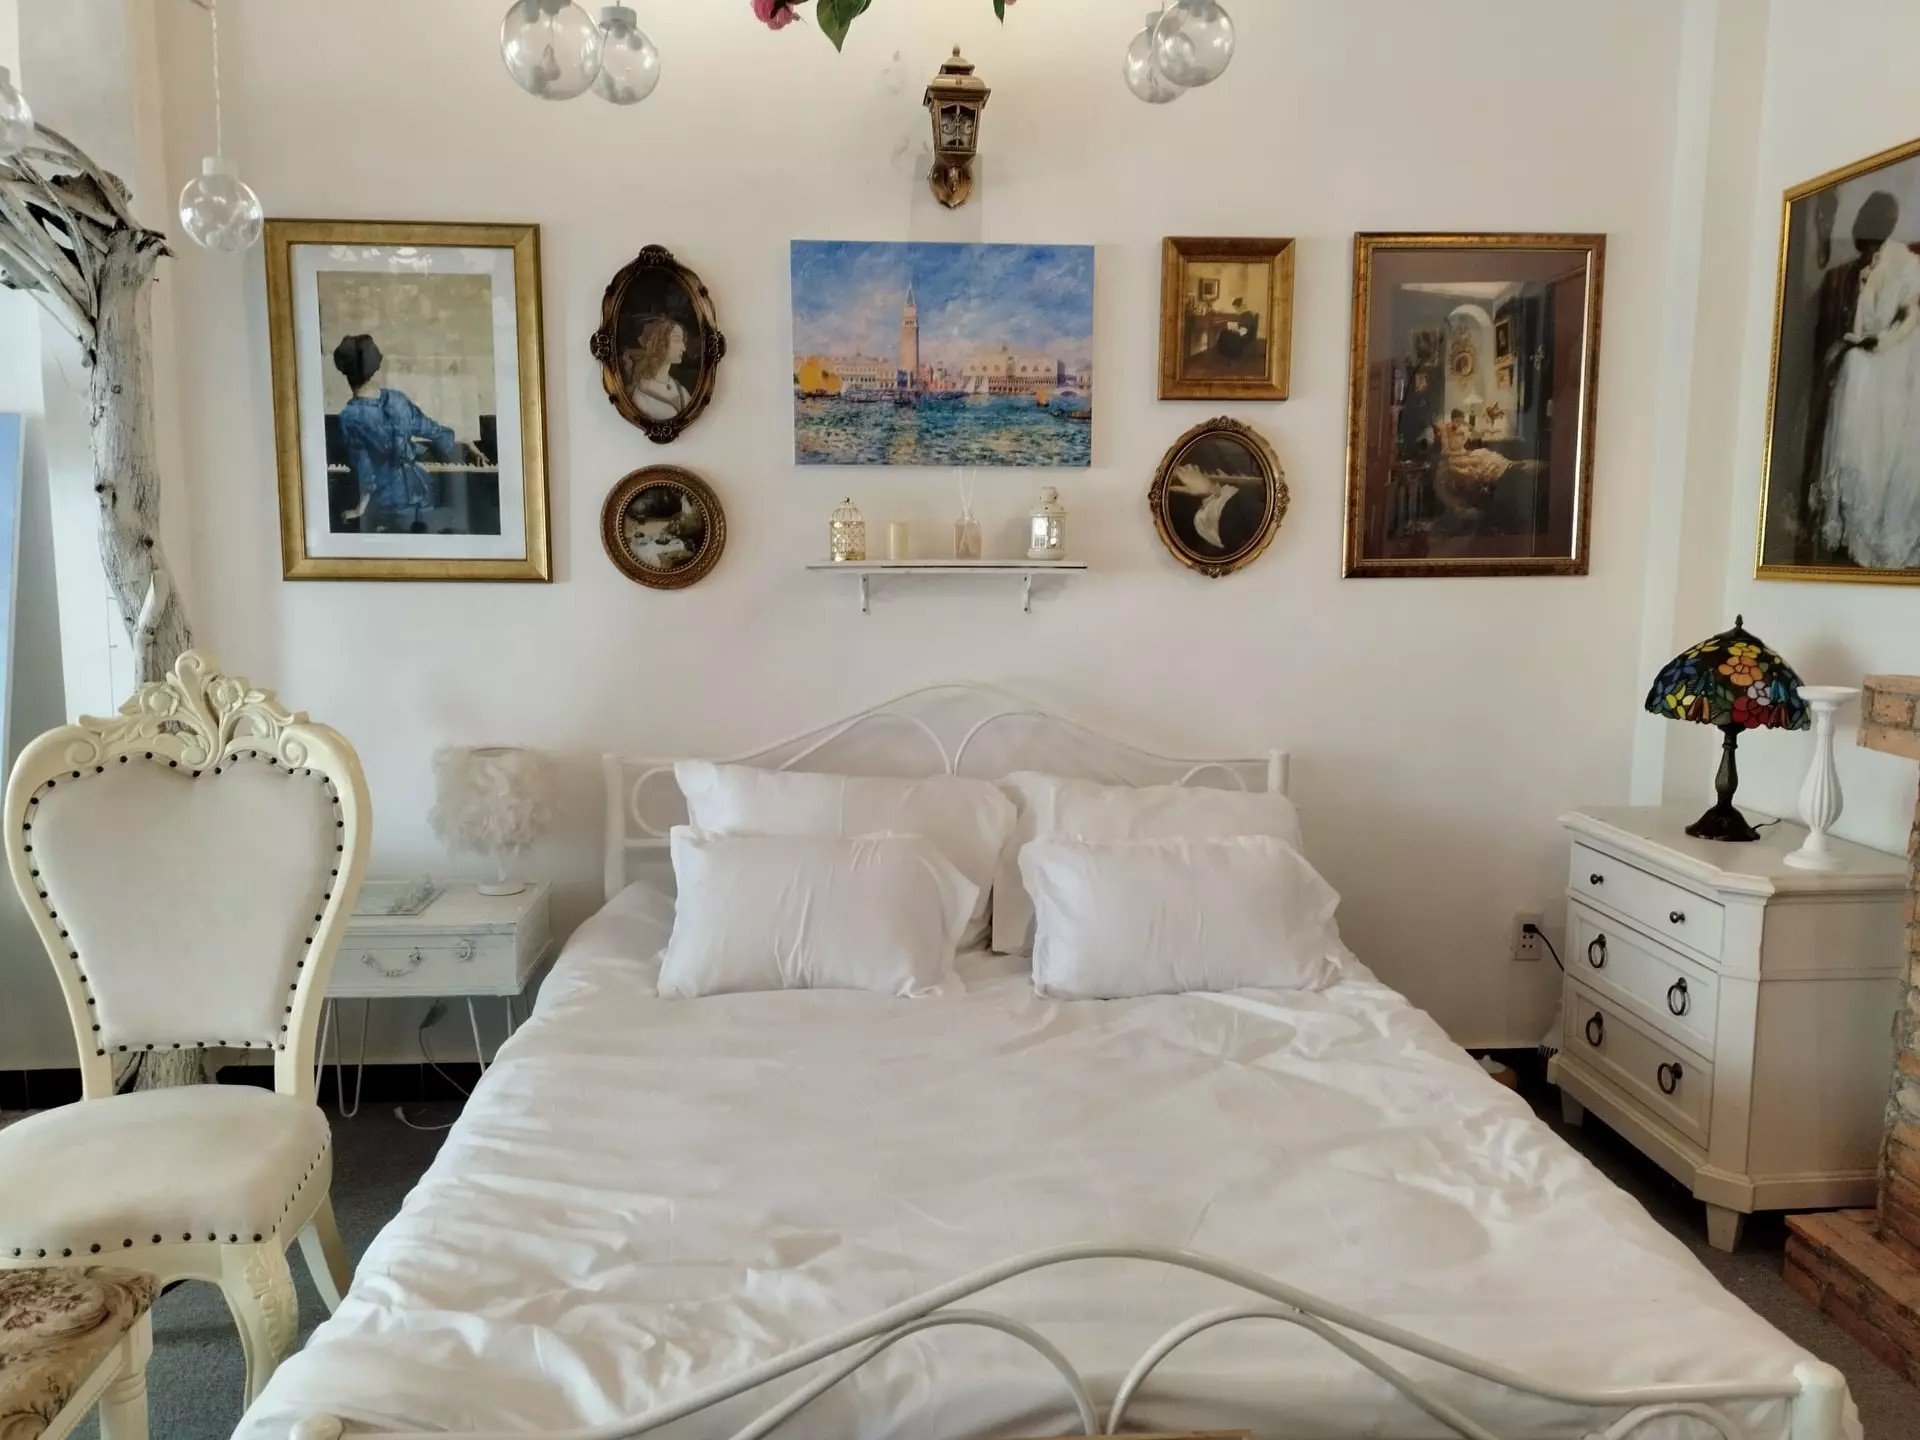 
Chiếc giường sắt theo phong cách cổ điển cực kỳ xinh xắn anh đã mua lại với giá 1,2 triệu đồng
